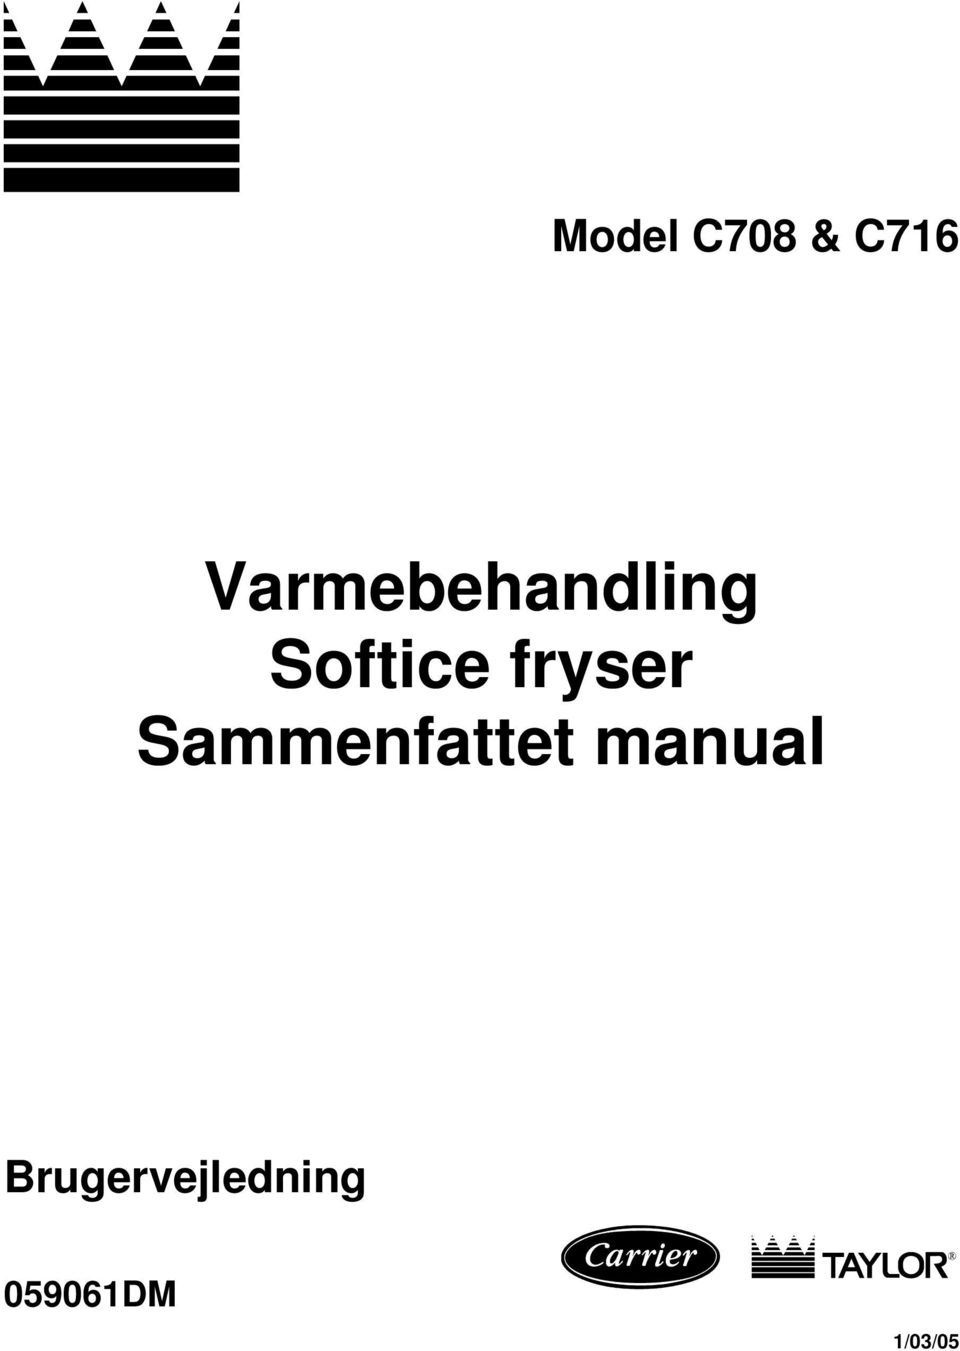 Varmebehandling Softice fryser Sammenfattet manual - PDF Free Download